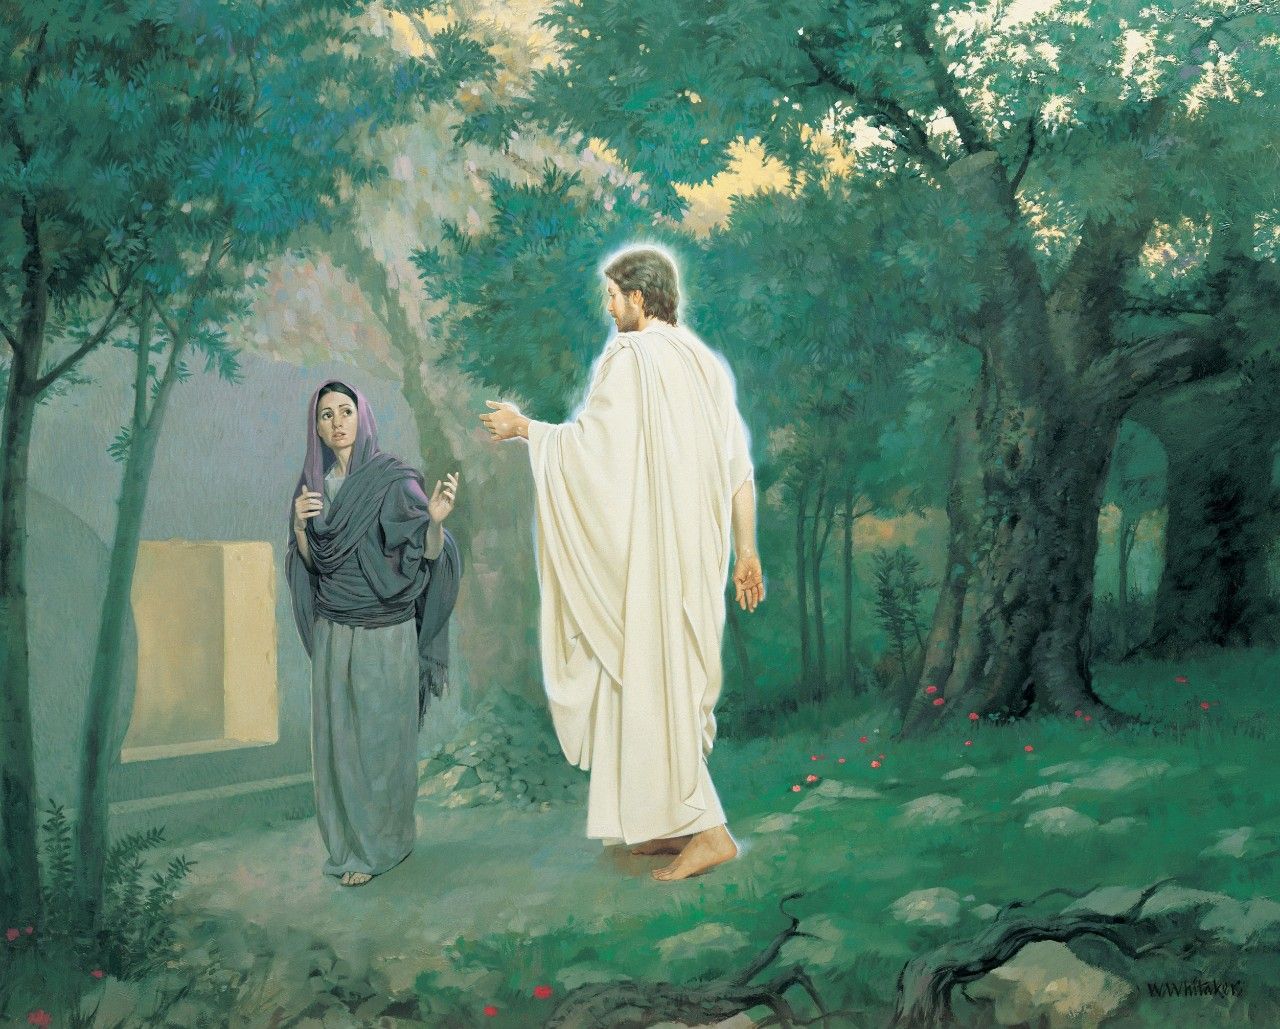 Jesus sa til henne, “Maria”